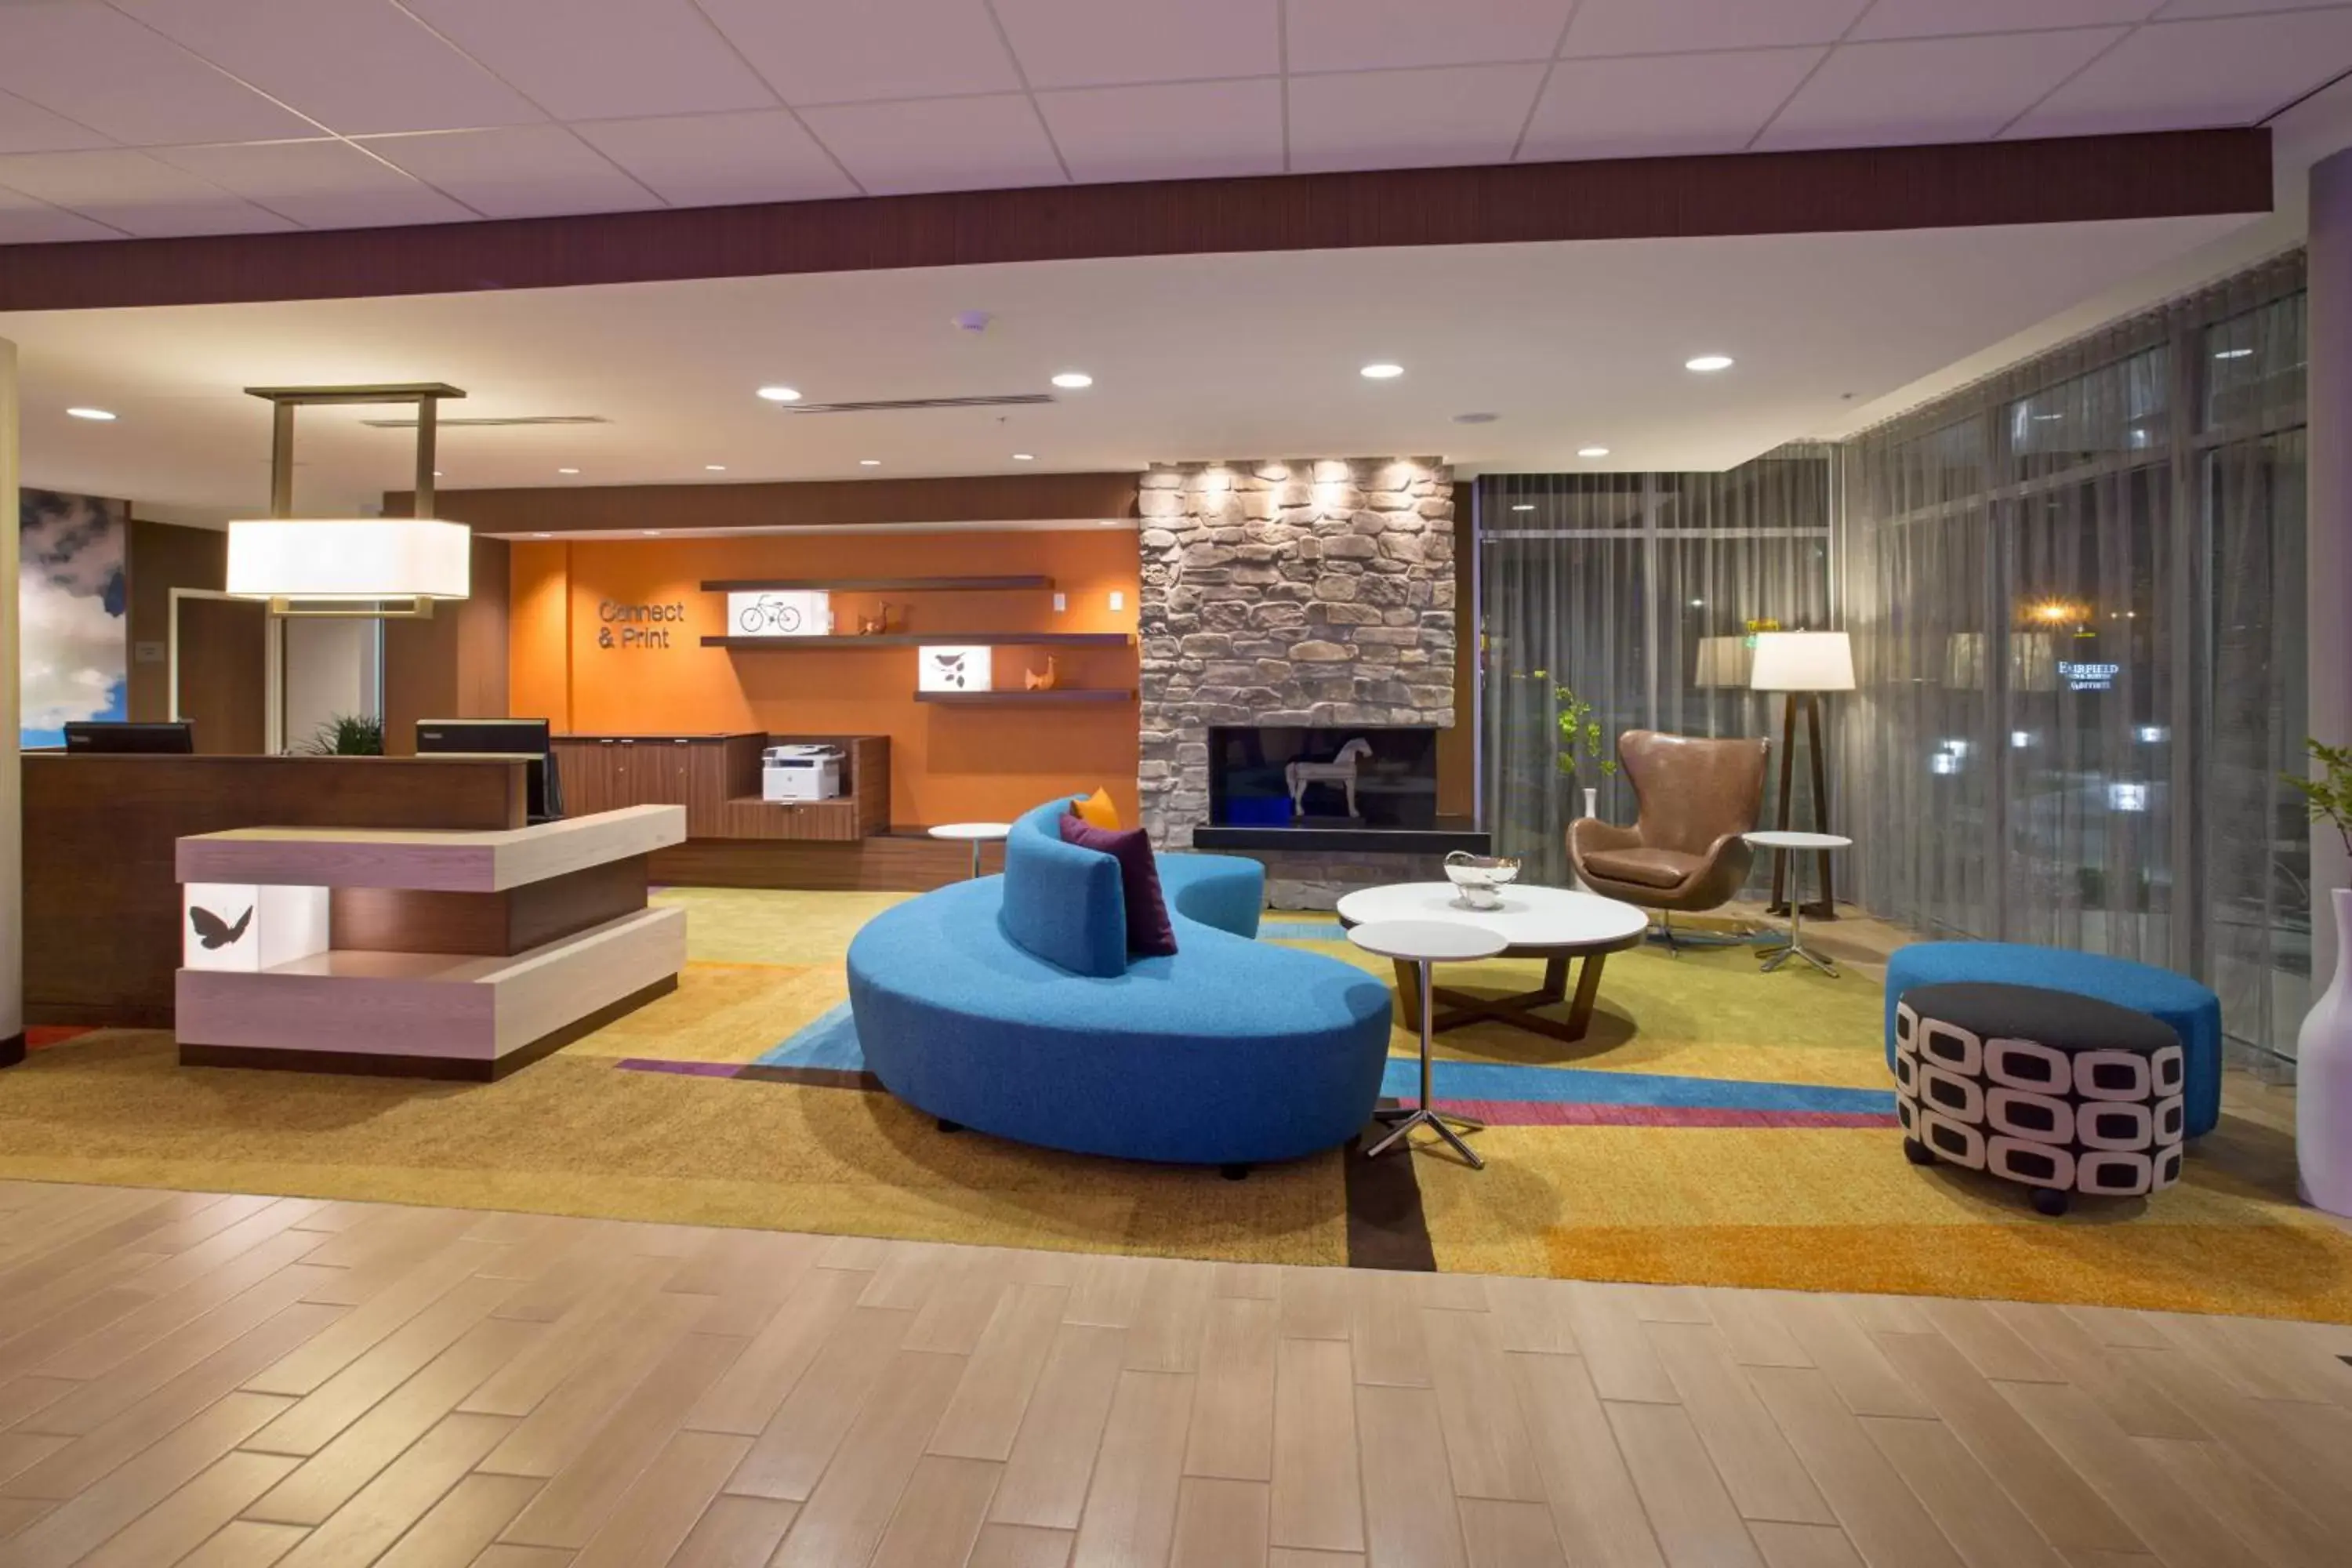 Lobby or reception in Fairfield Inn & Suites by Marriott Burlington